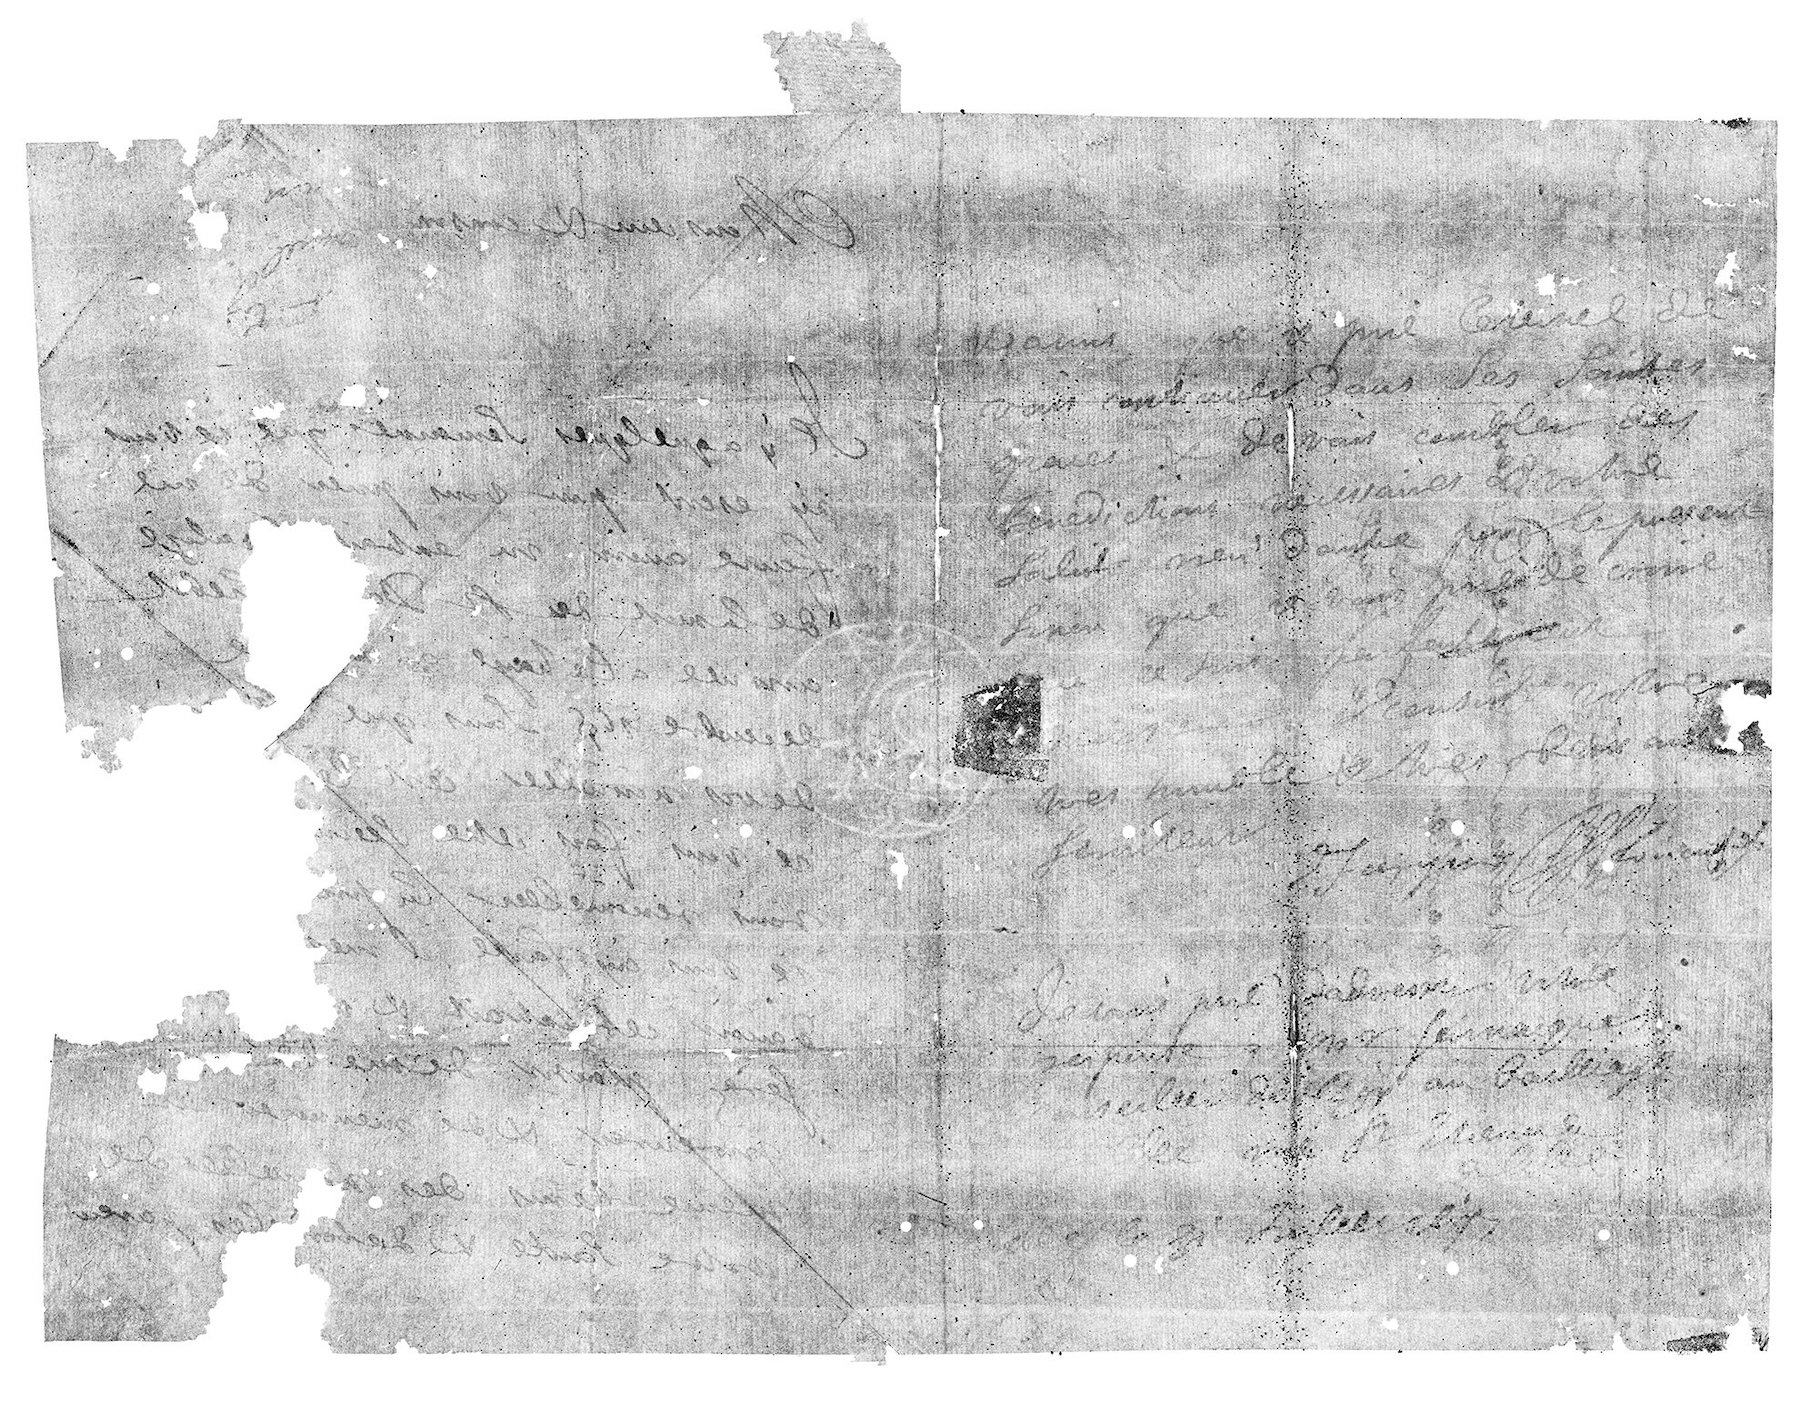 Cette lettre scellée datant de 1697 a été virtuellement ouverte grâce à une technique développée par des chercheurs. © Unlocking History Research Group